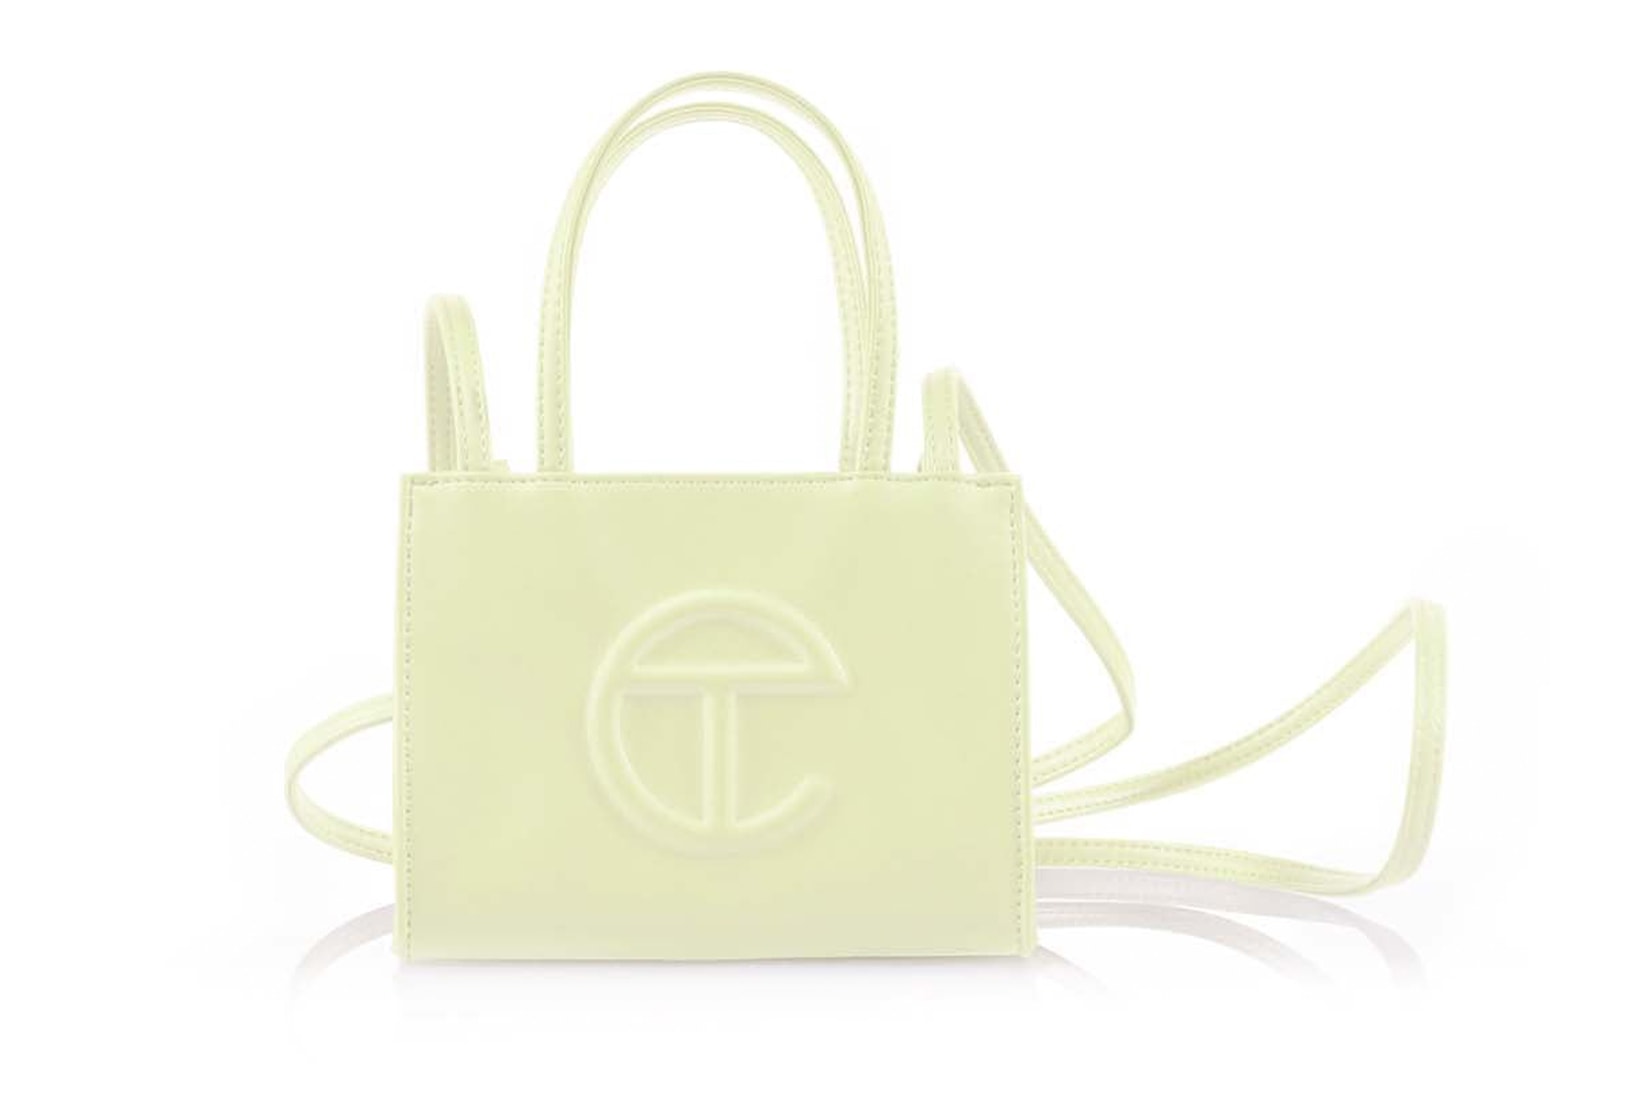 Telfar "Glue" Collection Shopping Bag Small